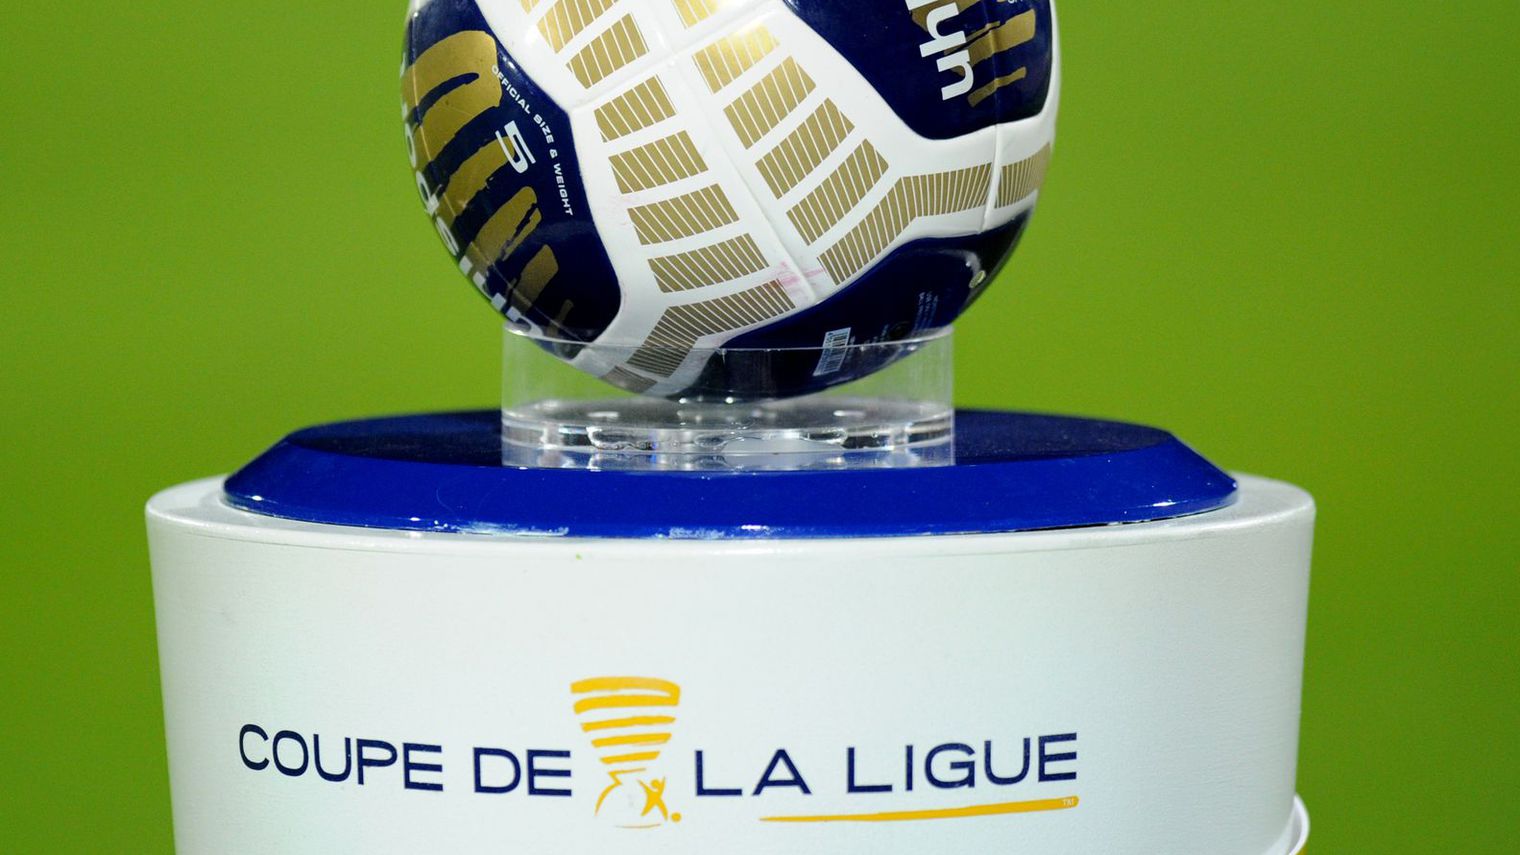 Voir les résultats et les résumés vidéos des matchs de la Coupe de la Ligue en streaming